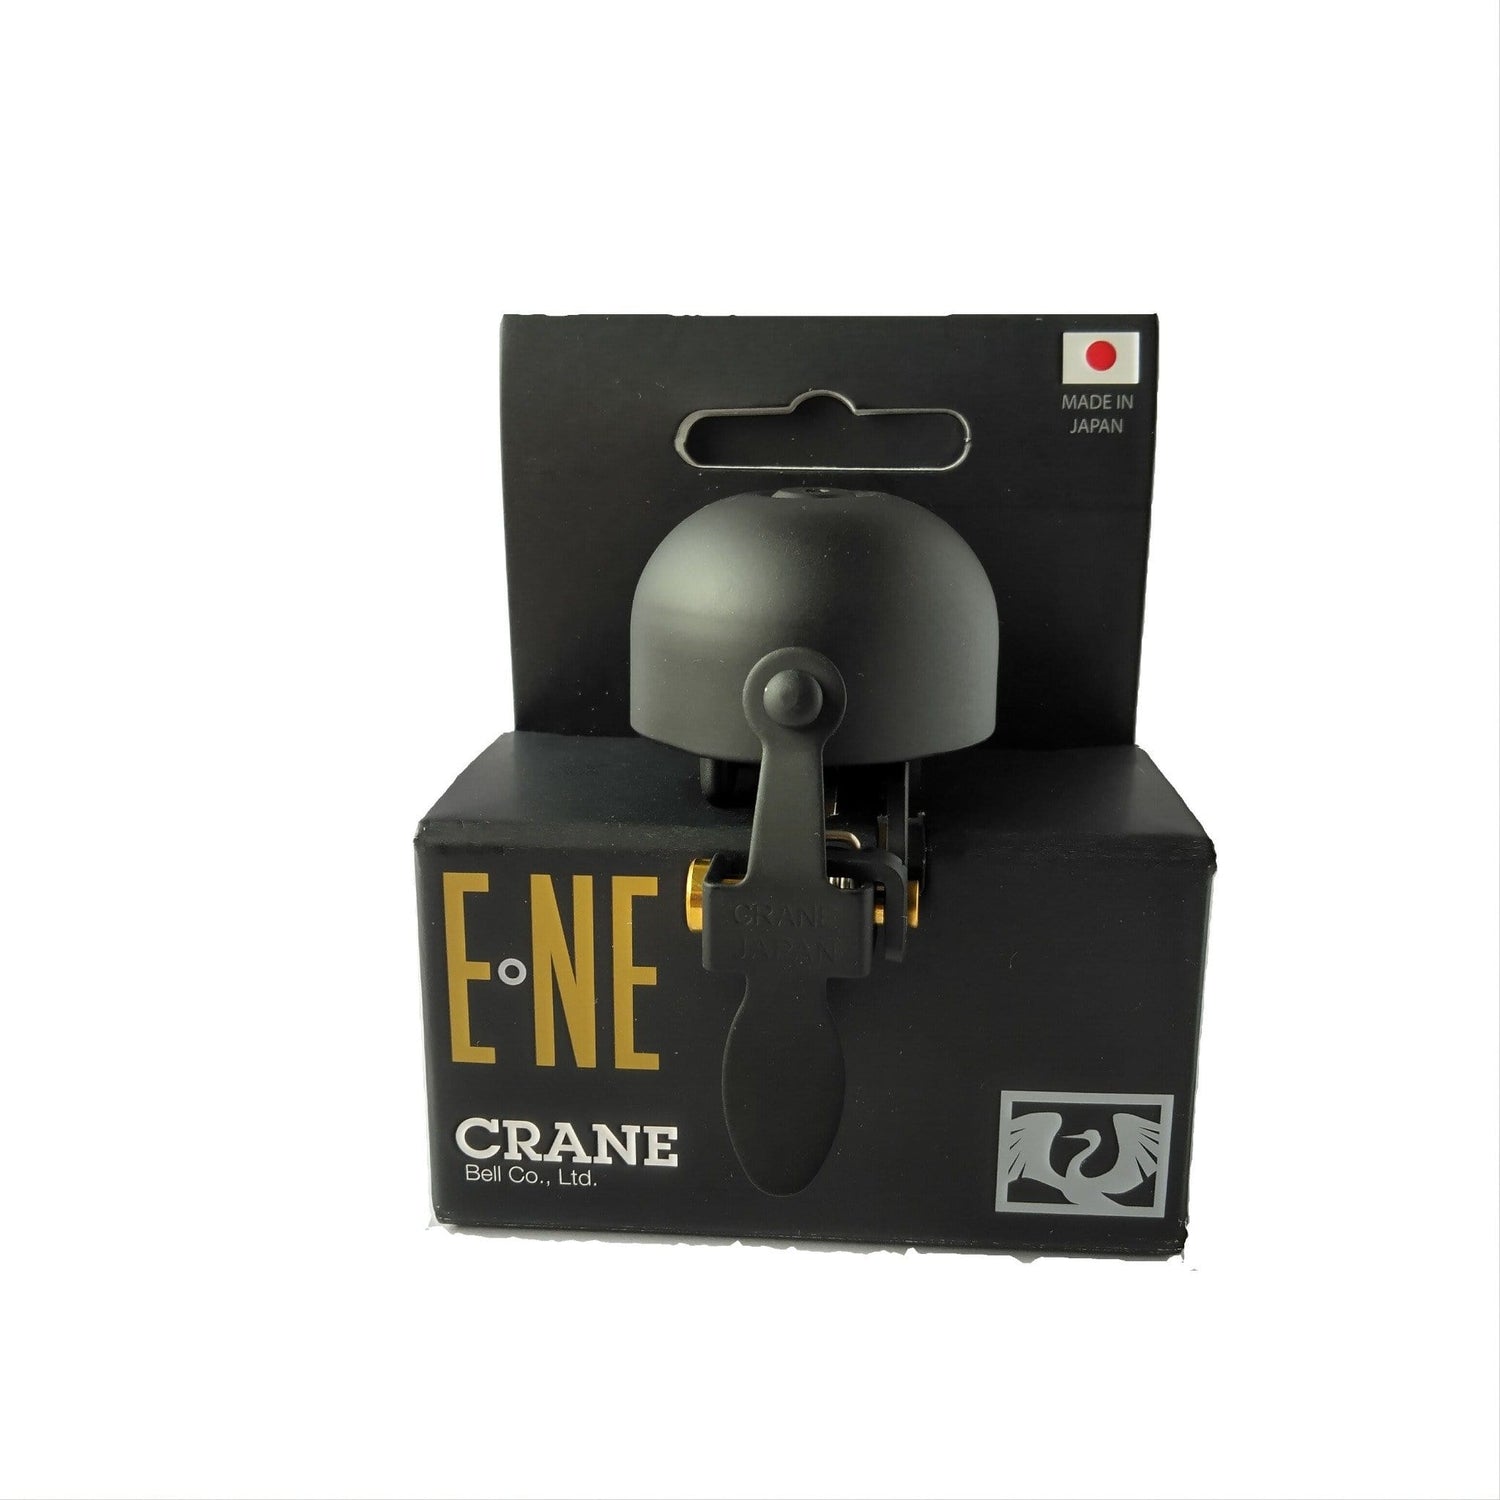 All Black E-NE Crane bell in box